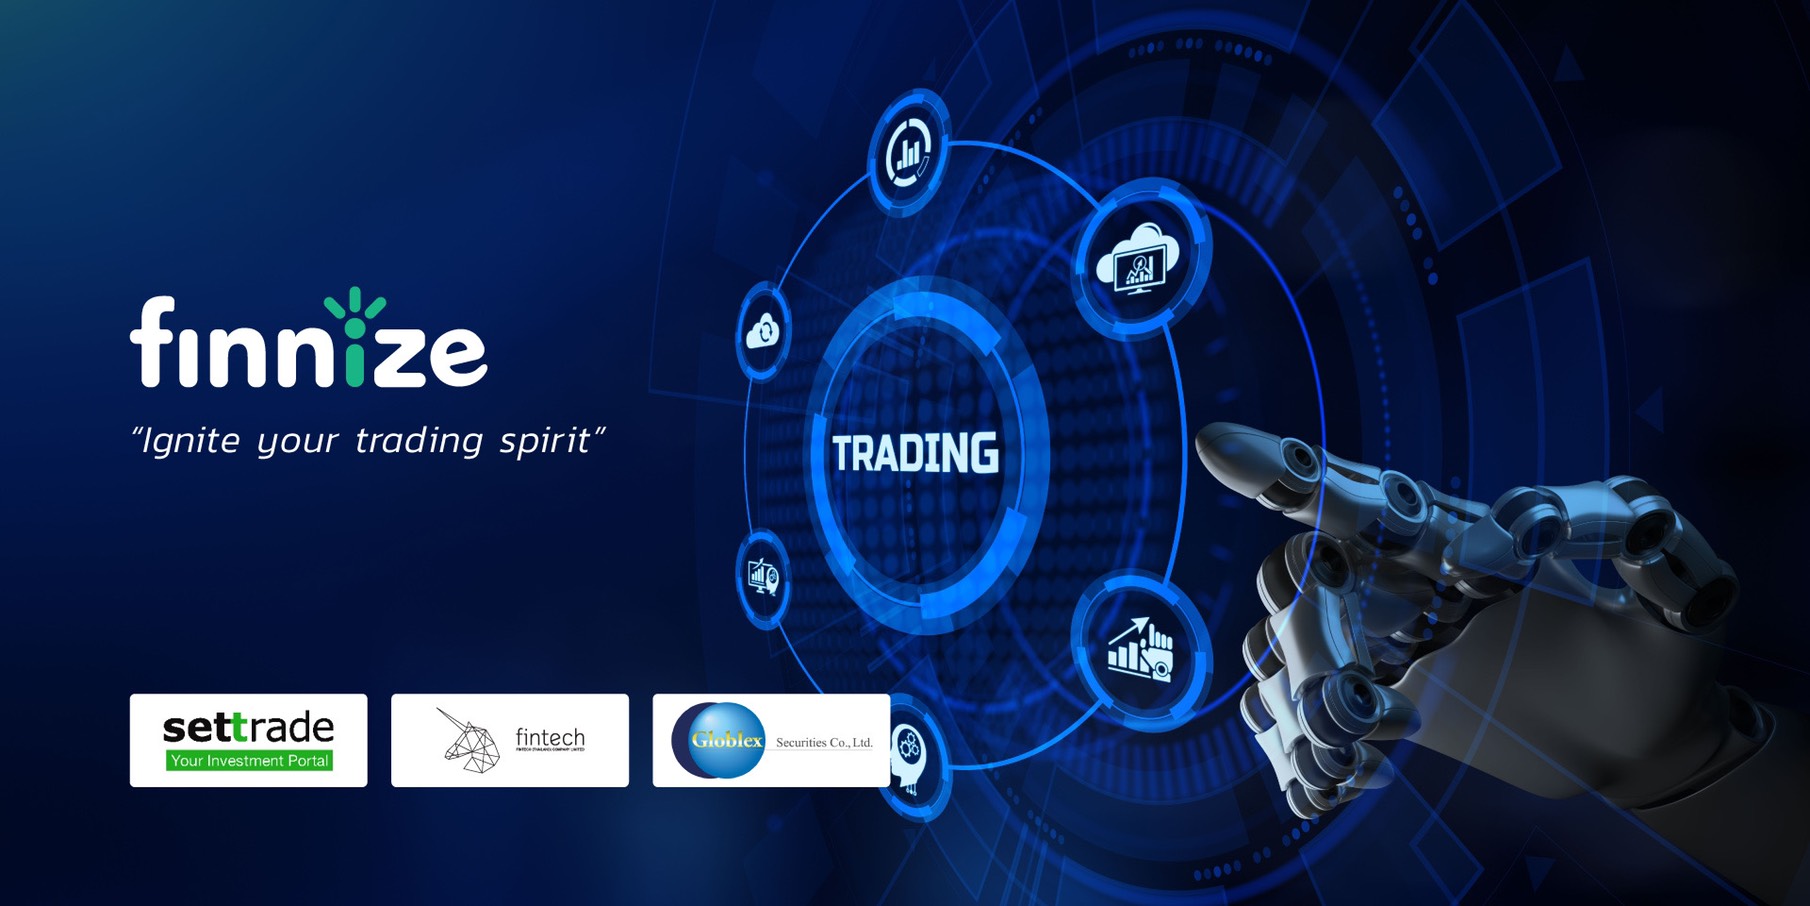 เปิดตัวเว็บไซต์ “Finnize” พลิกโฉมวงการ Algo Trading บริการรายย่อยลงทุนด้วยหุ่นยนต์